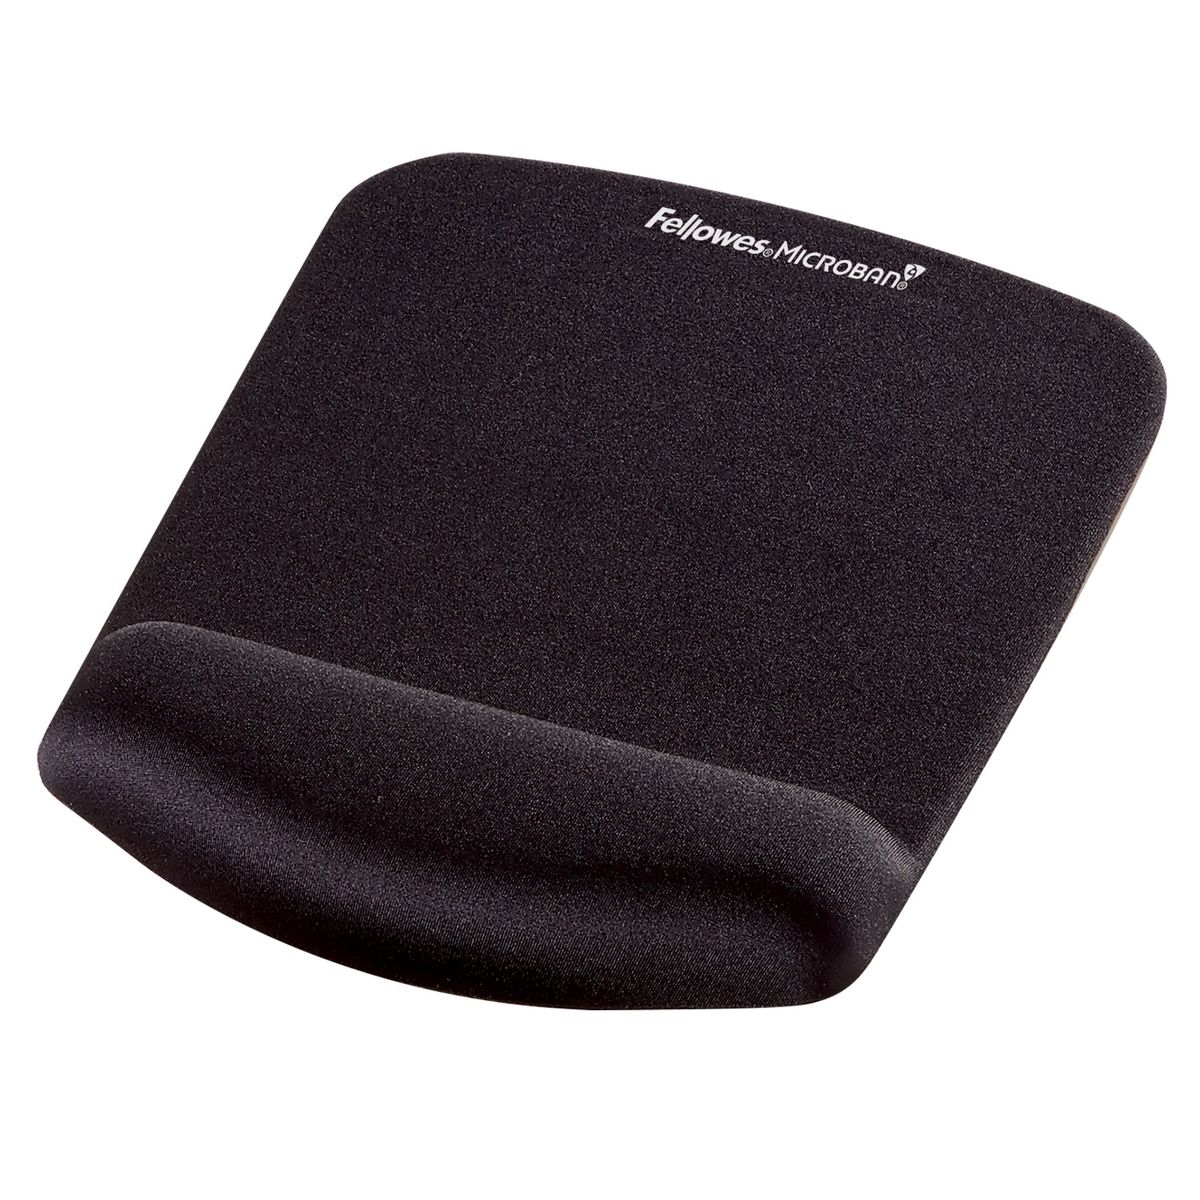 Fellowes PlushTouch - Tapis de souris / repose-poignets ergonomique - noir - protection anti-bactérienne Microban - surface douce et antidérapante